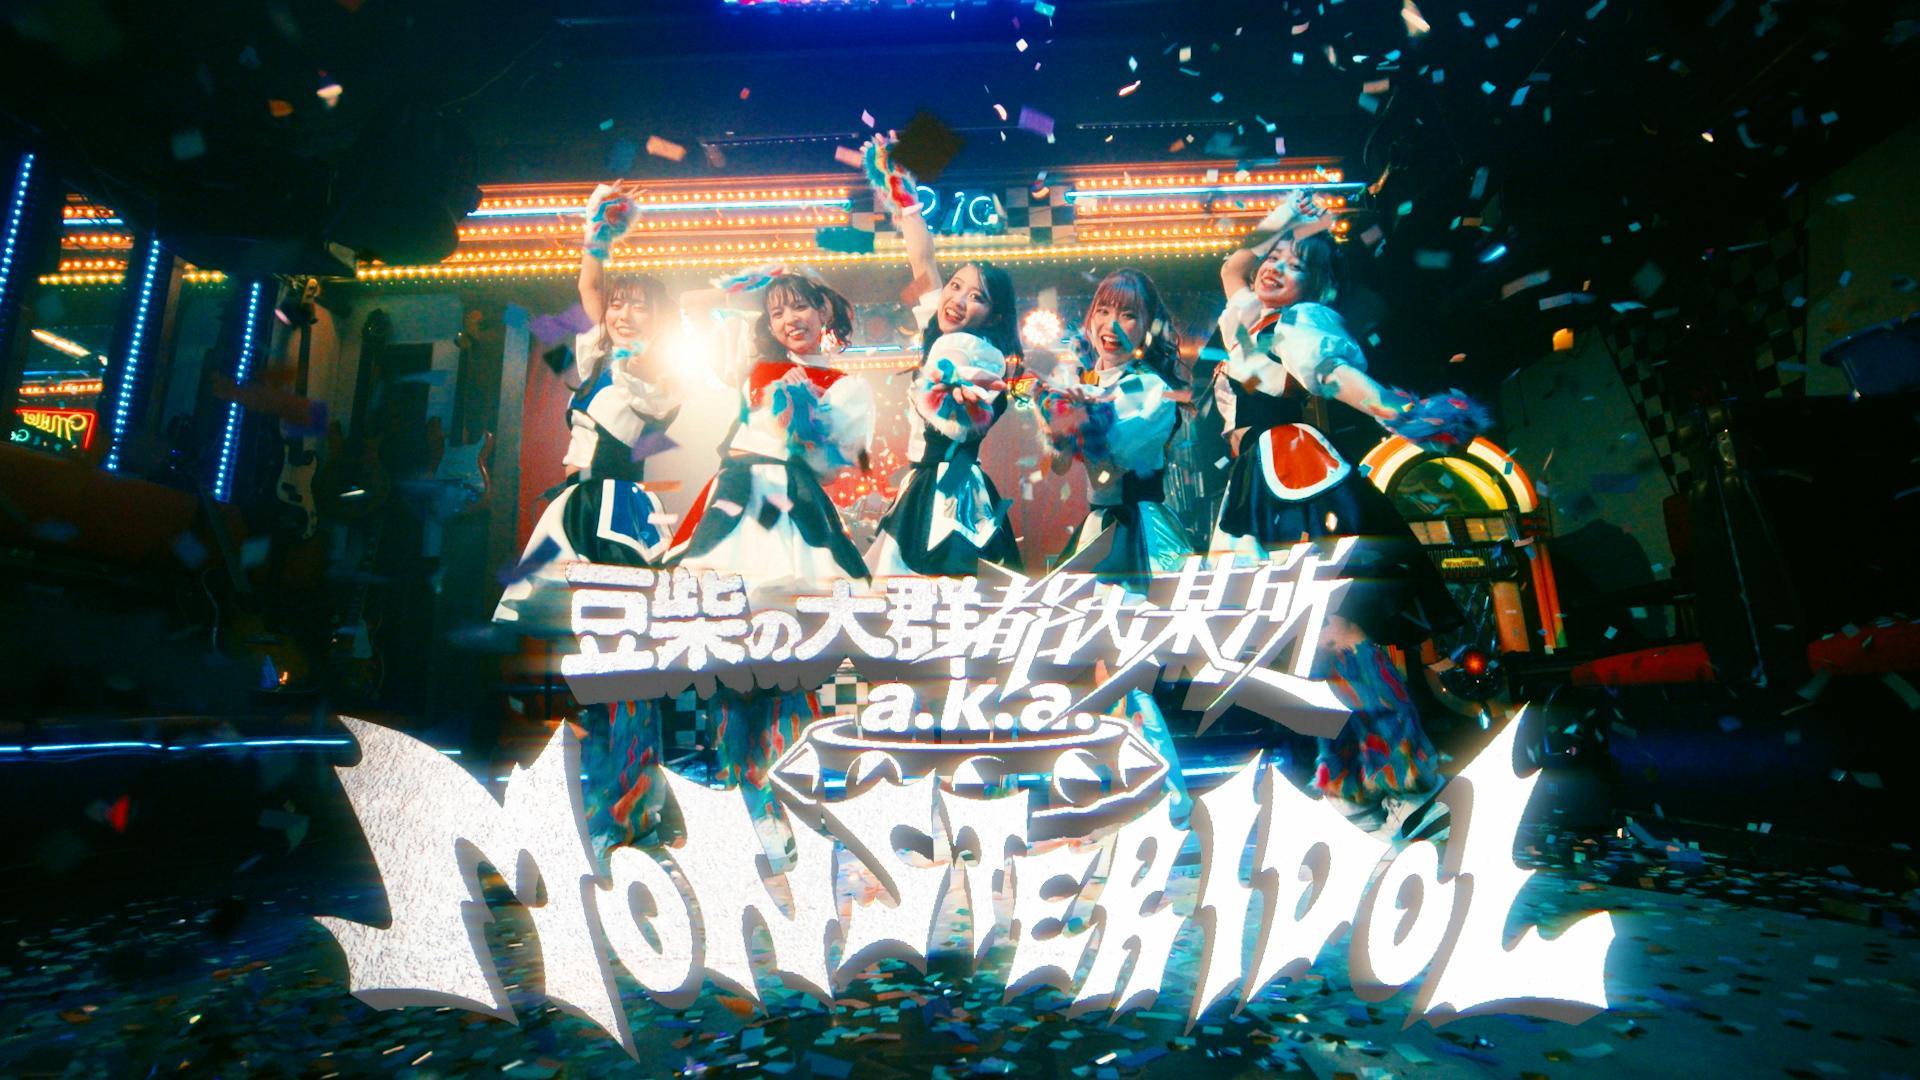 豆柴の大群都内某所 a.k.a. MONSTERIDOL 1st Single 「わんダーらんど」のMusic Videoを公開!! さらにワンマンライブ「MONSTER NiGHT」開催決定!!